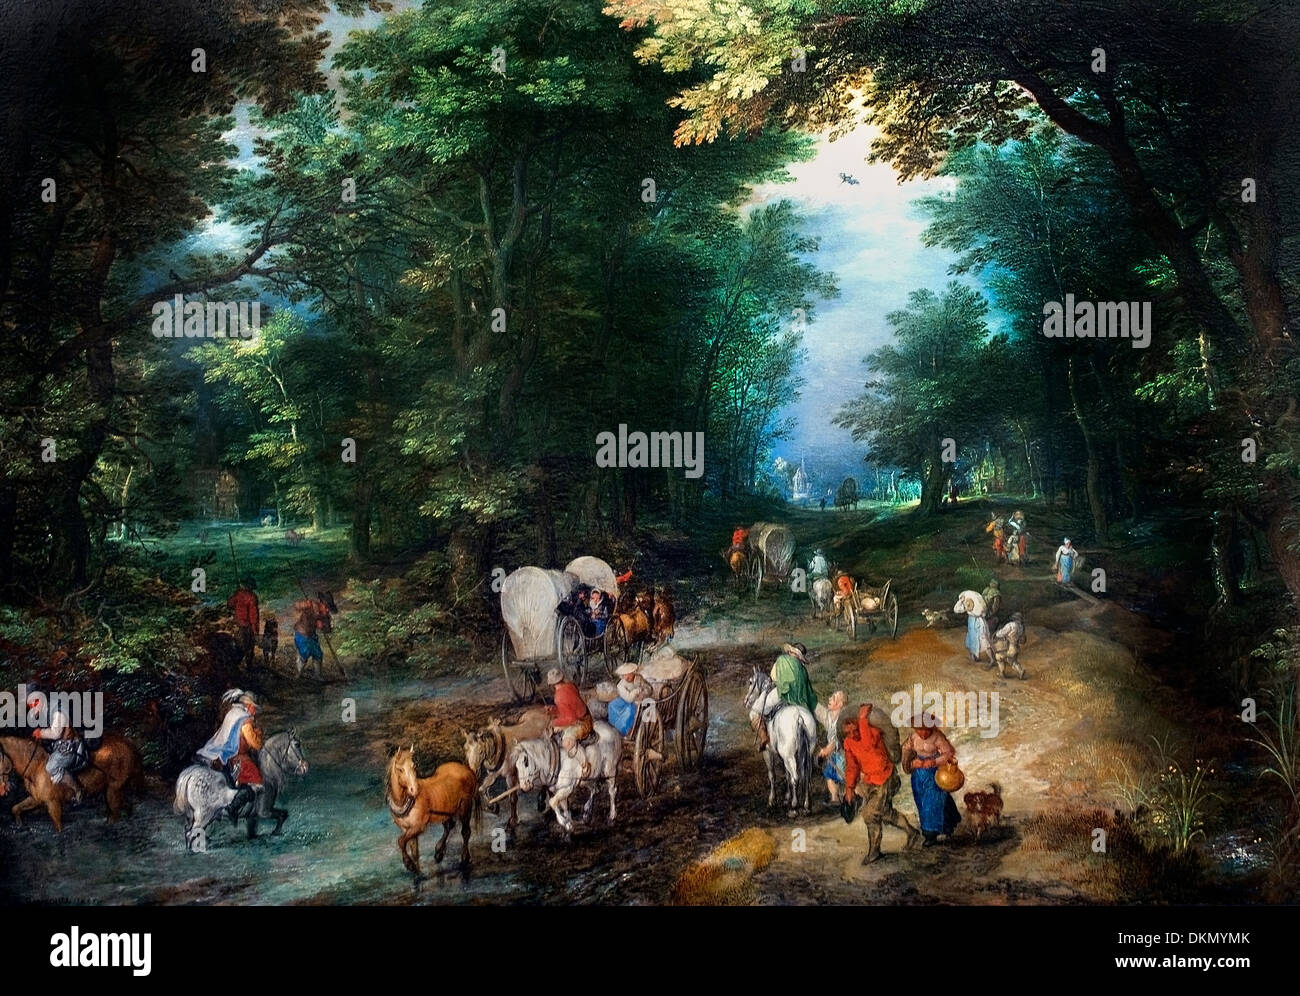 Chemin forestier animé par Jan Brueghel l'ancien (1568-1625) Belgique flamande belge Banque D'Images